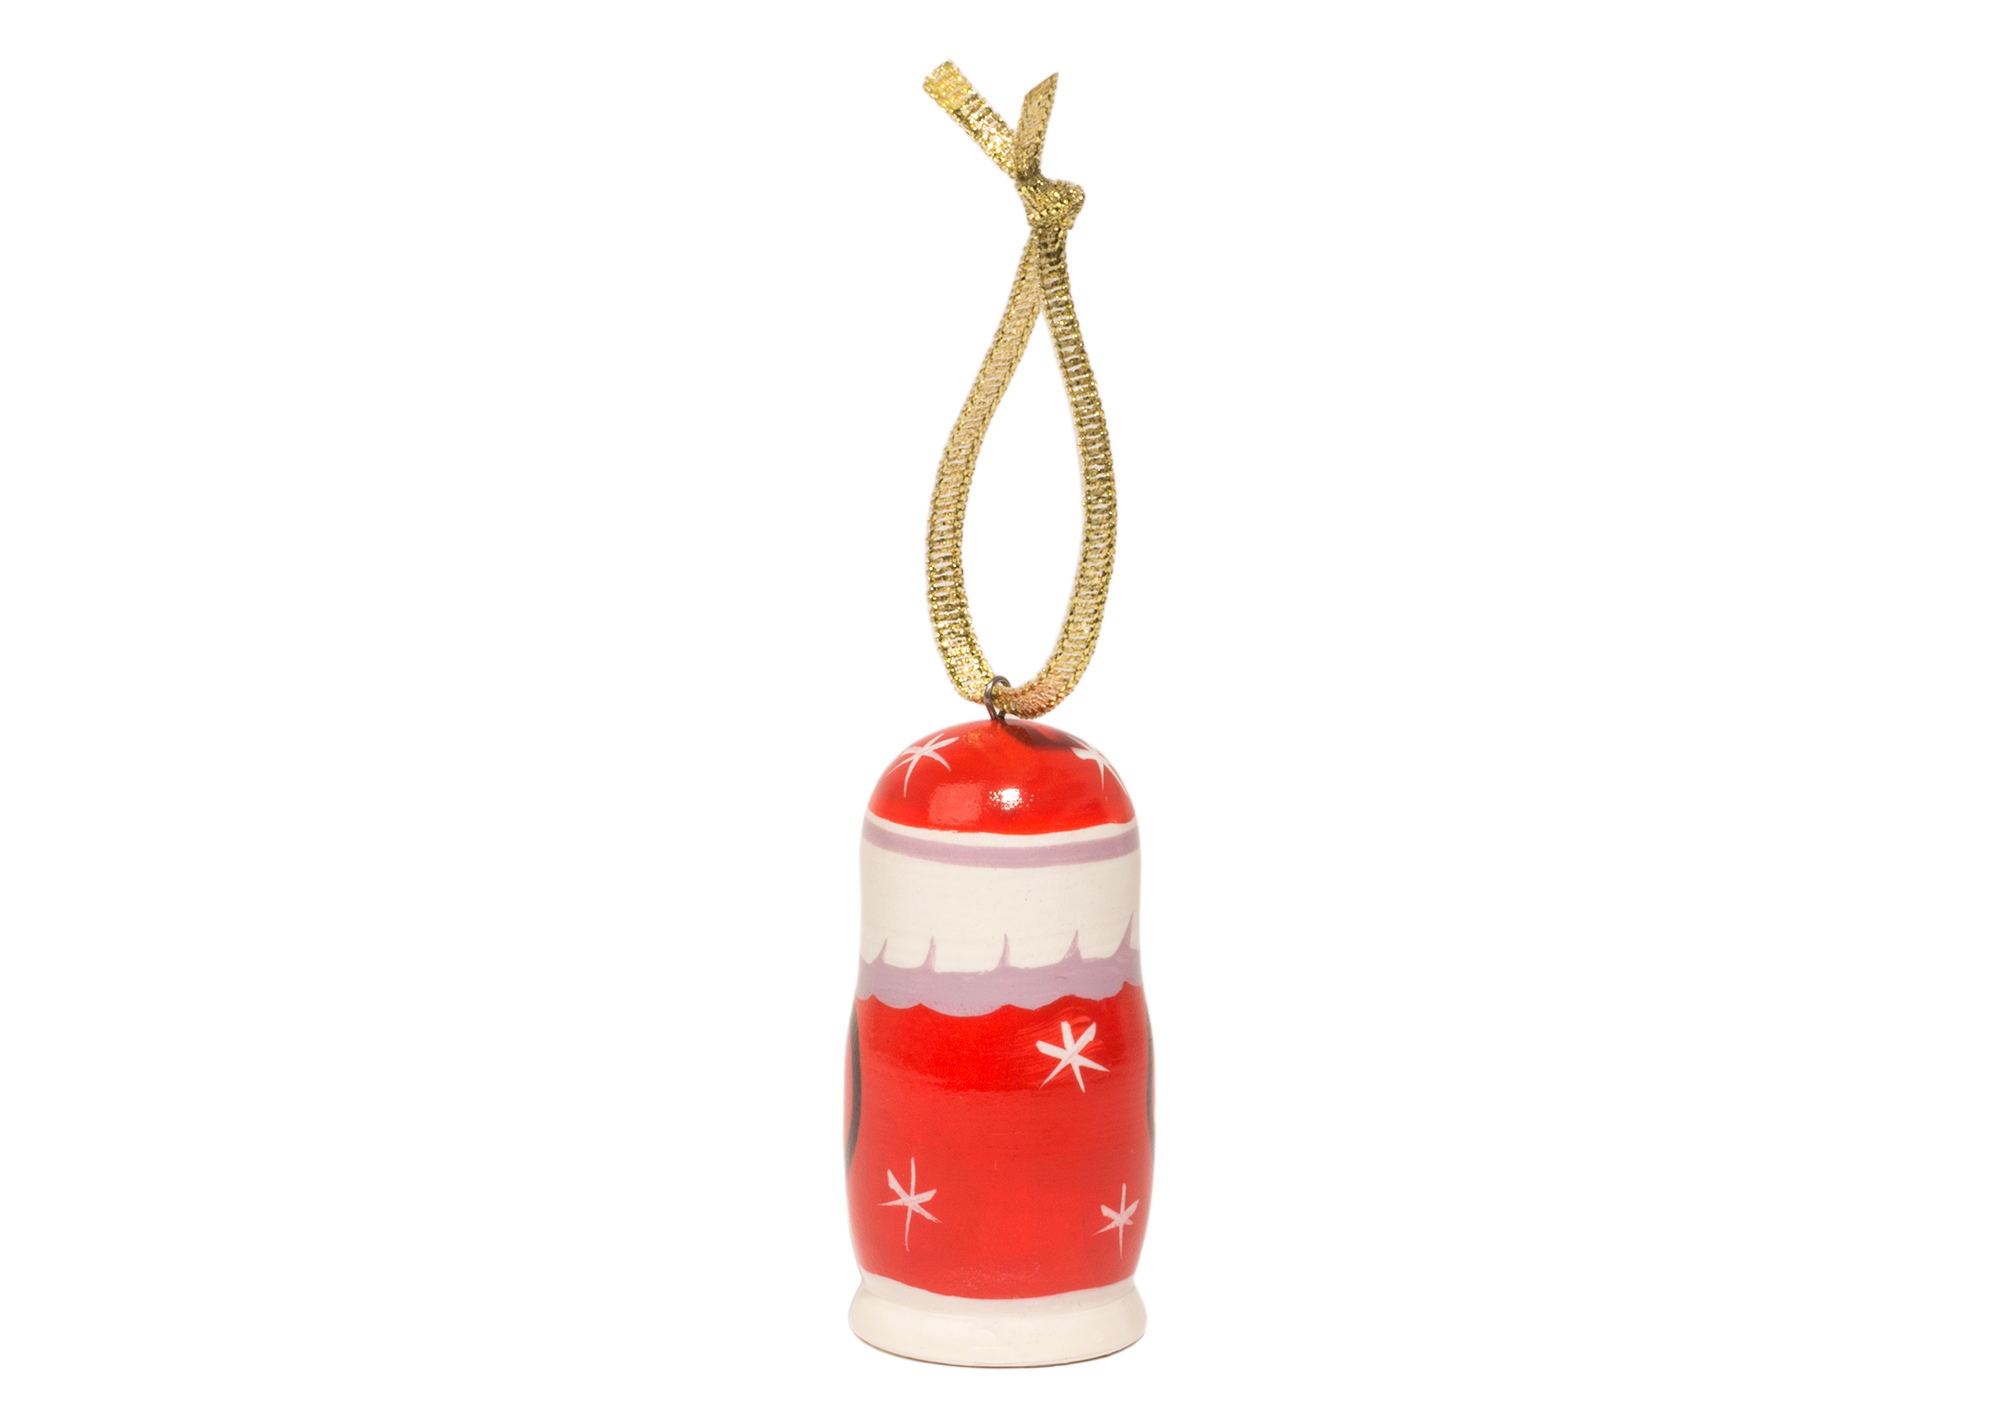 Buy Мини-елочное украшение "Дед Мороз" 3,75 см at GoldenCockerel.com